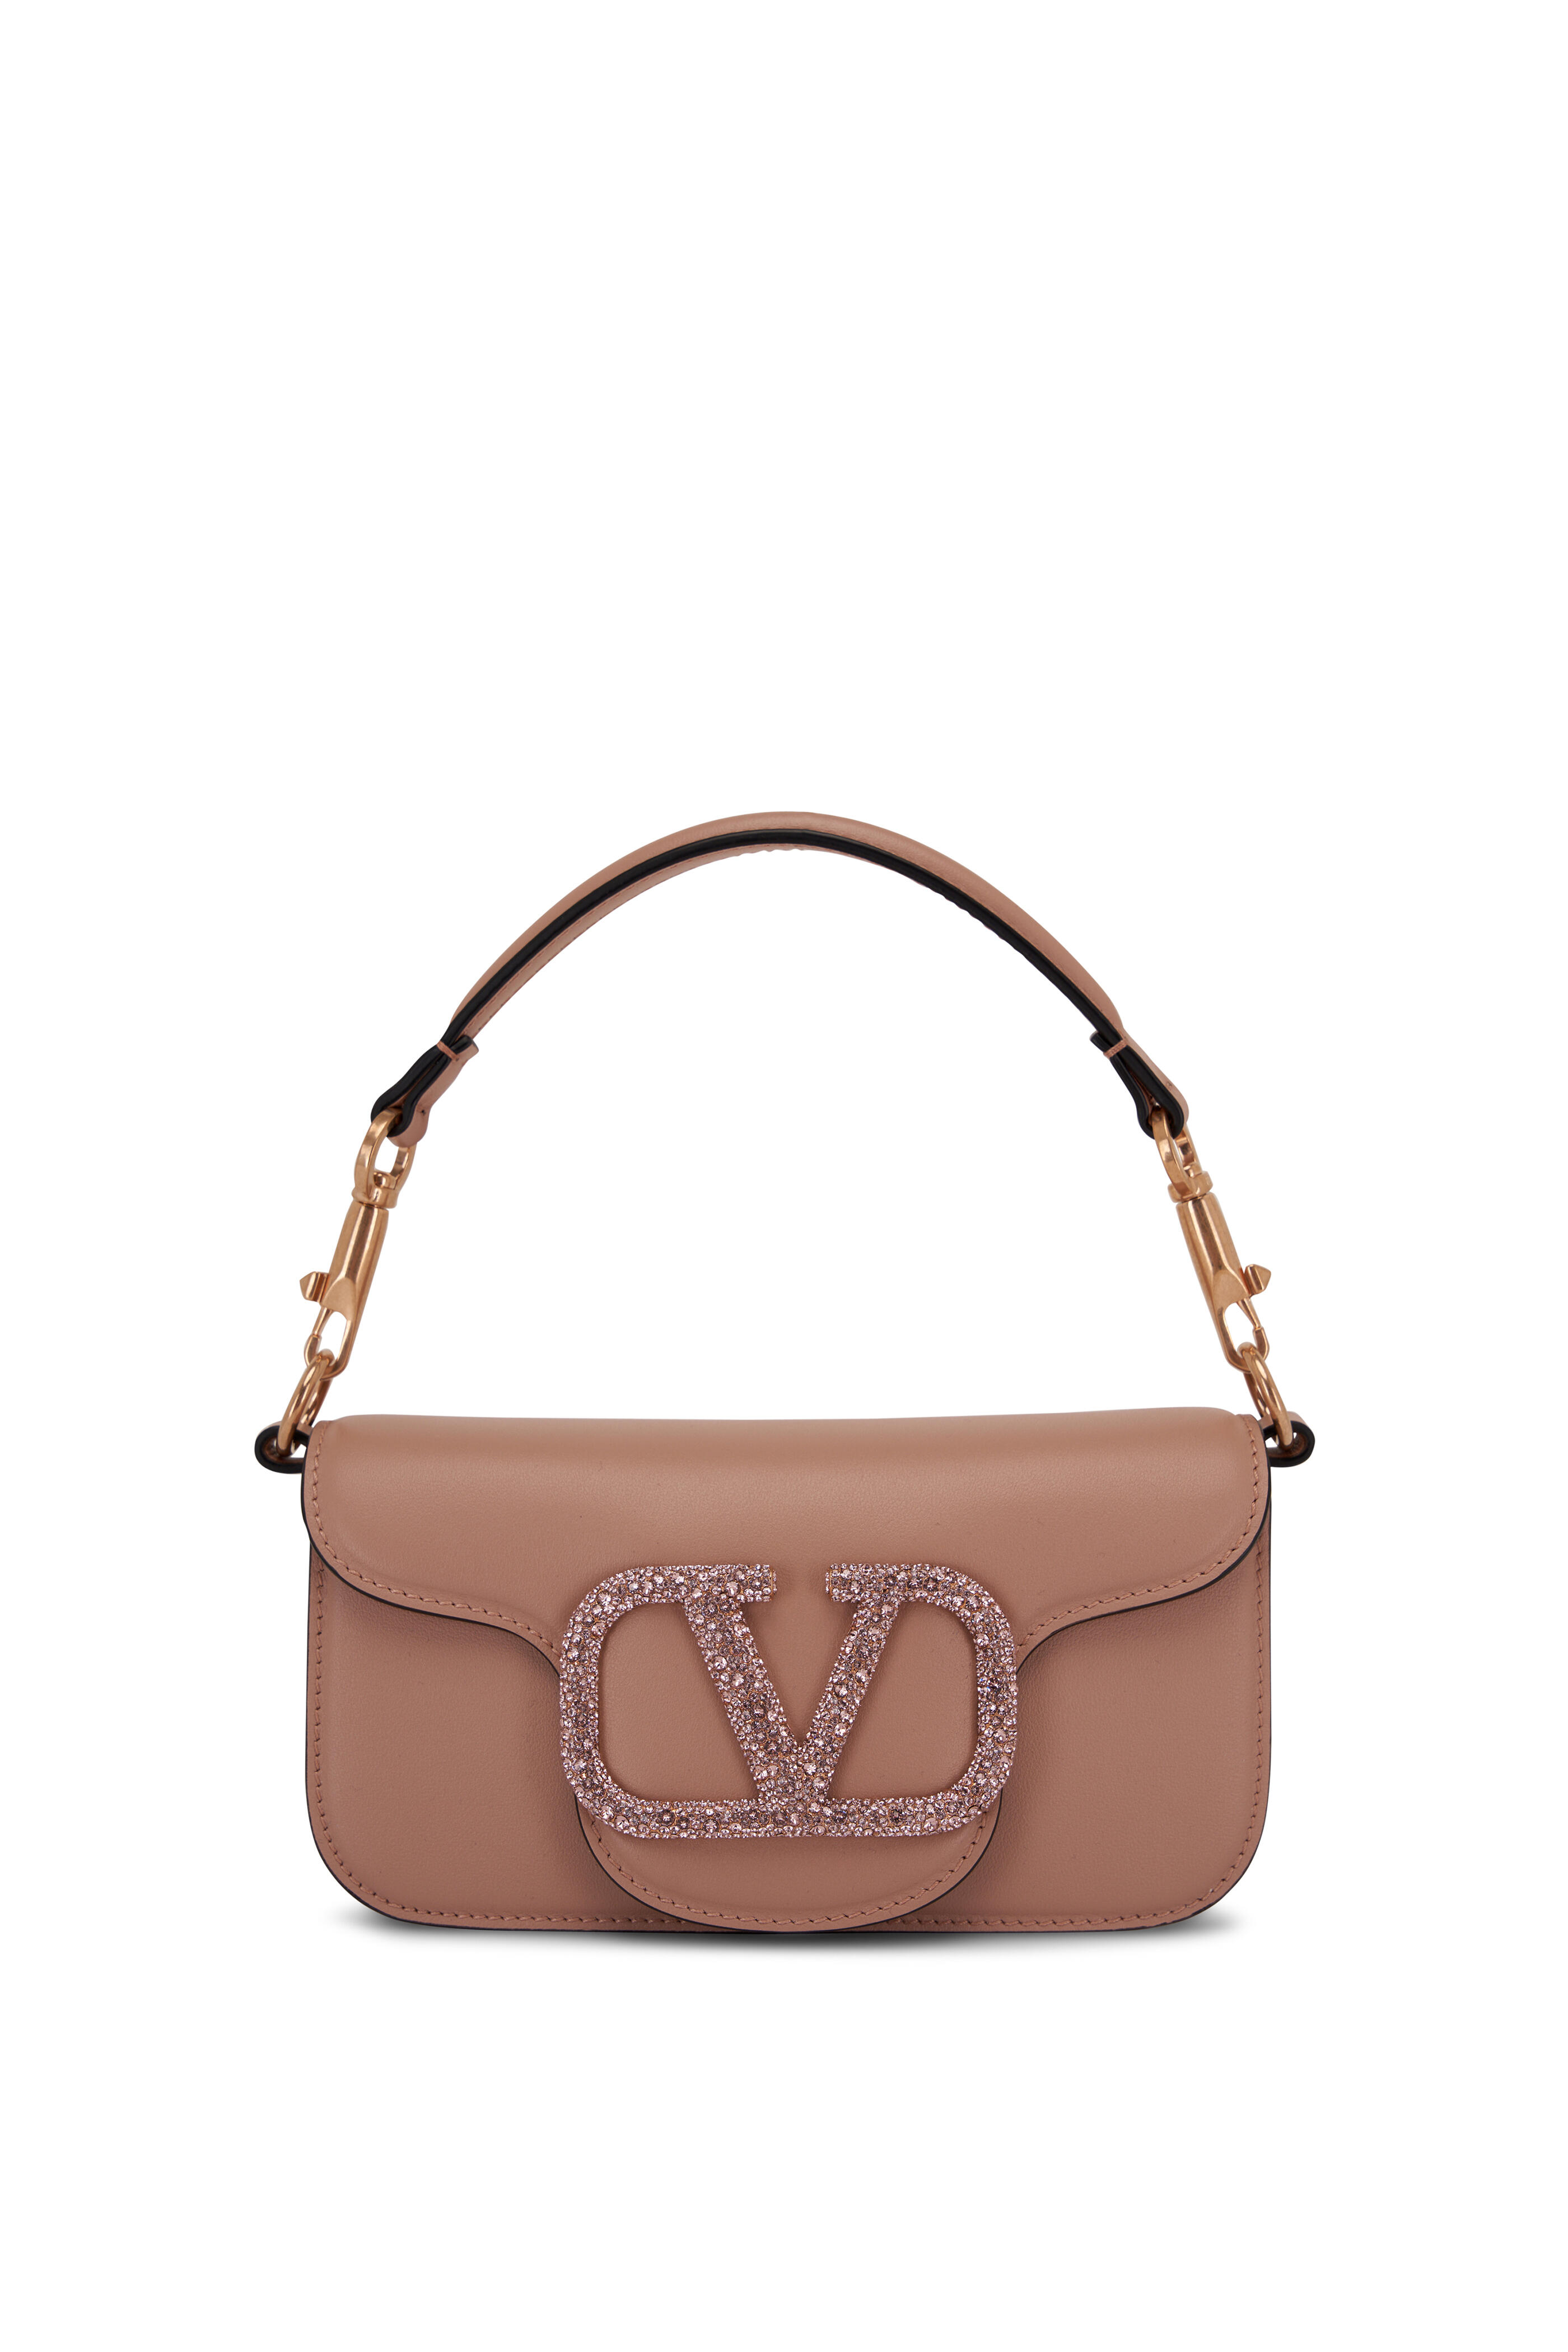 White V-Logo chain leather shoulder bag, Valentino Garavani